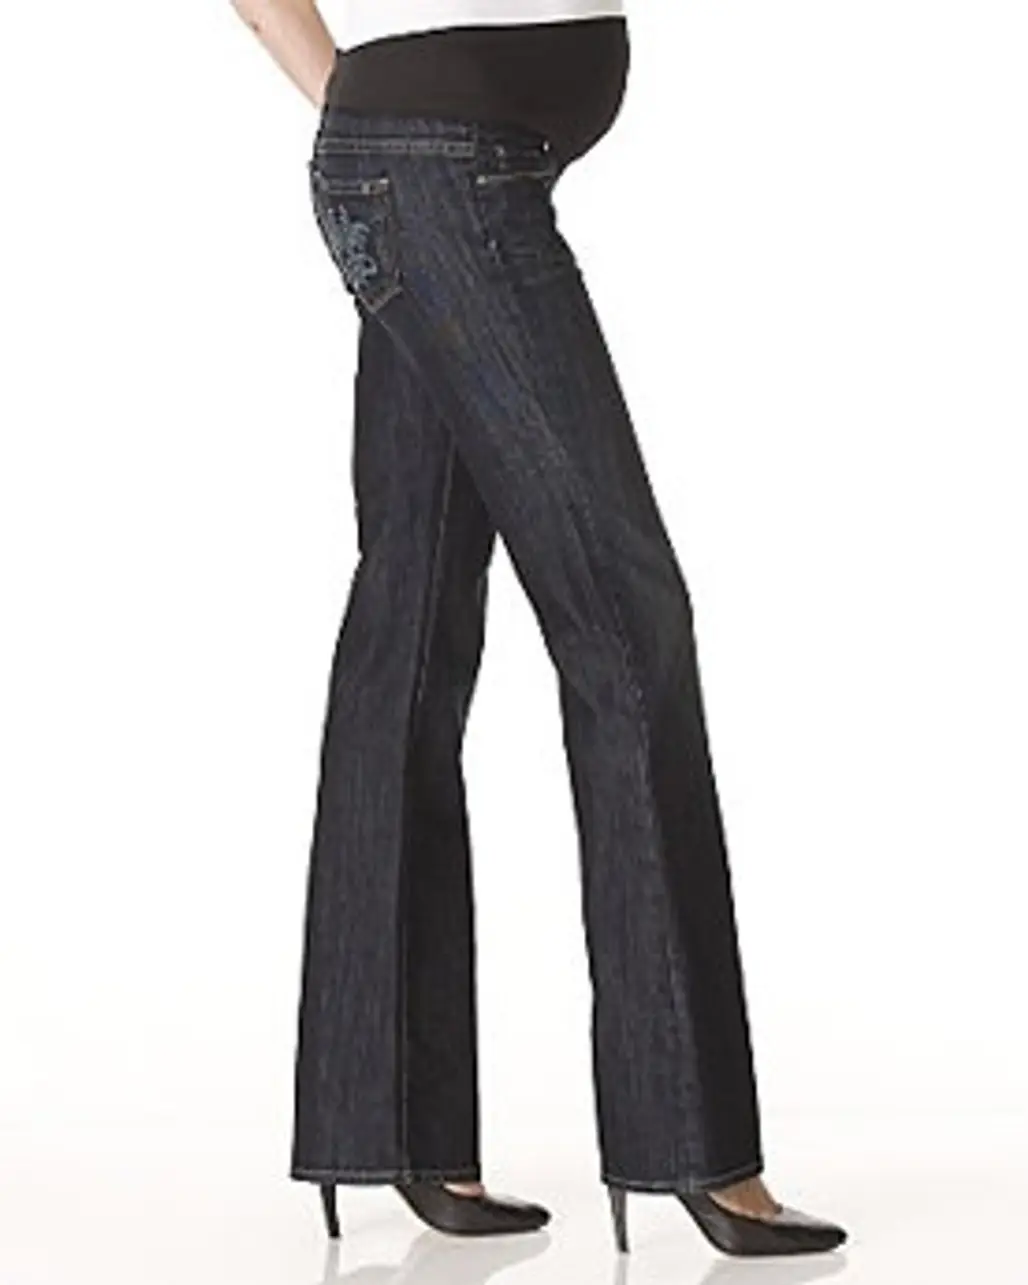 Paige Premium Denim "Laurel Canyon Las Palmas" Maternity Jeans in McKinley Wash